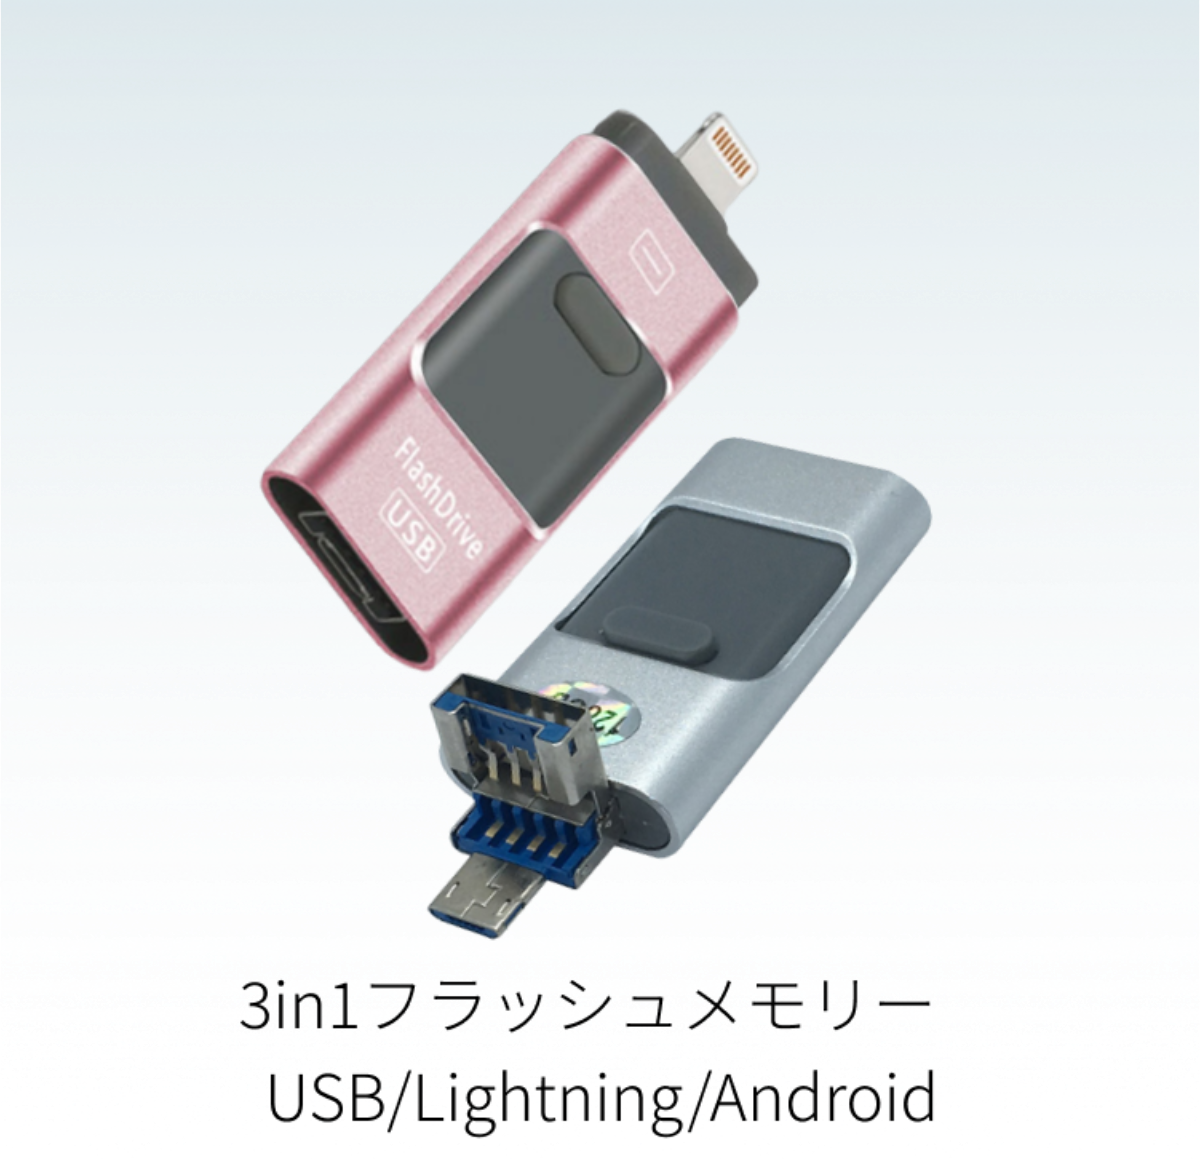 『人気急上昇中』3in1スライド式USB/Lightning/AndroidフラッシュメモリーUSB3.0（8G/16G/32G）｜iPhone/PC/Pad/Android対応、データ転送保存やスマホ容量不足など、これ1本で解決！接続するだけでフラッシュドライブ！